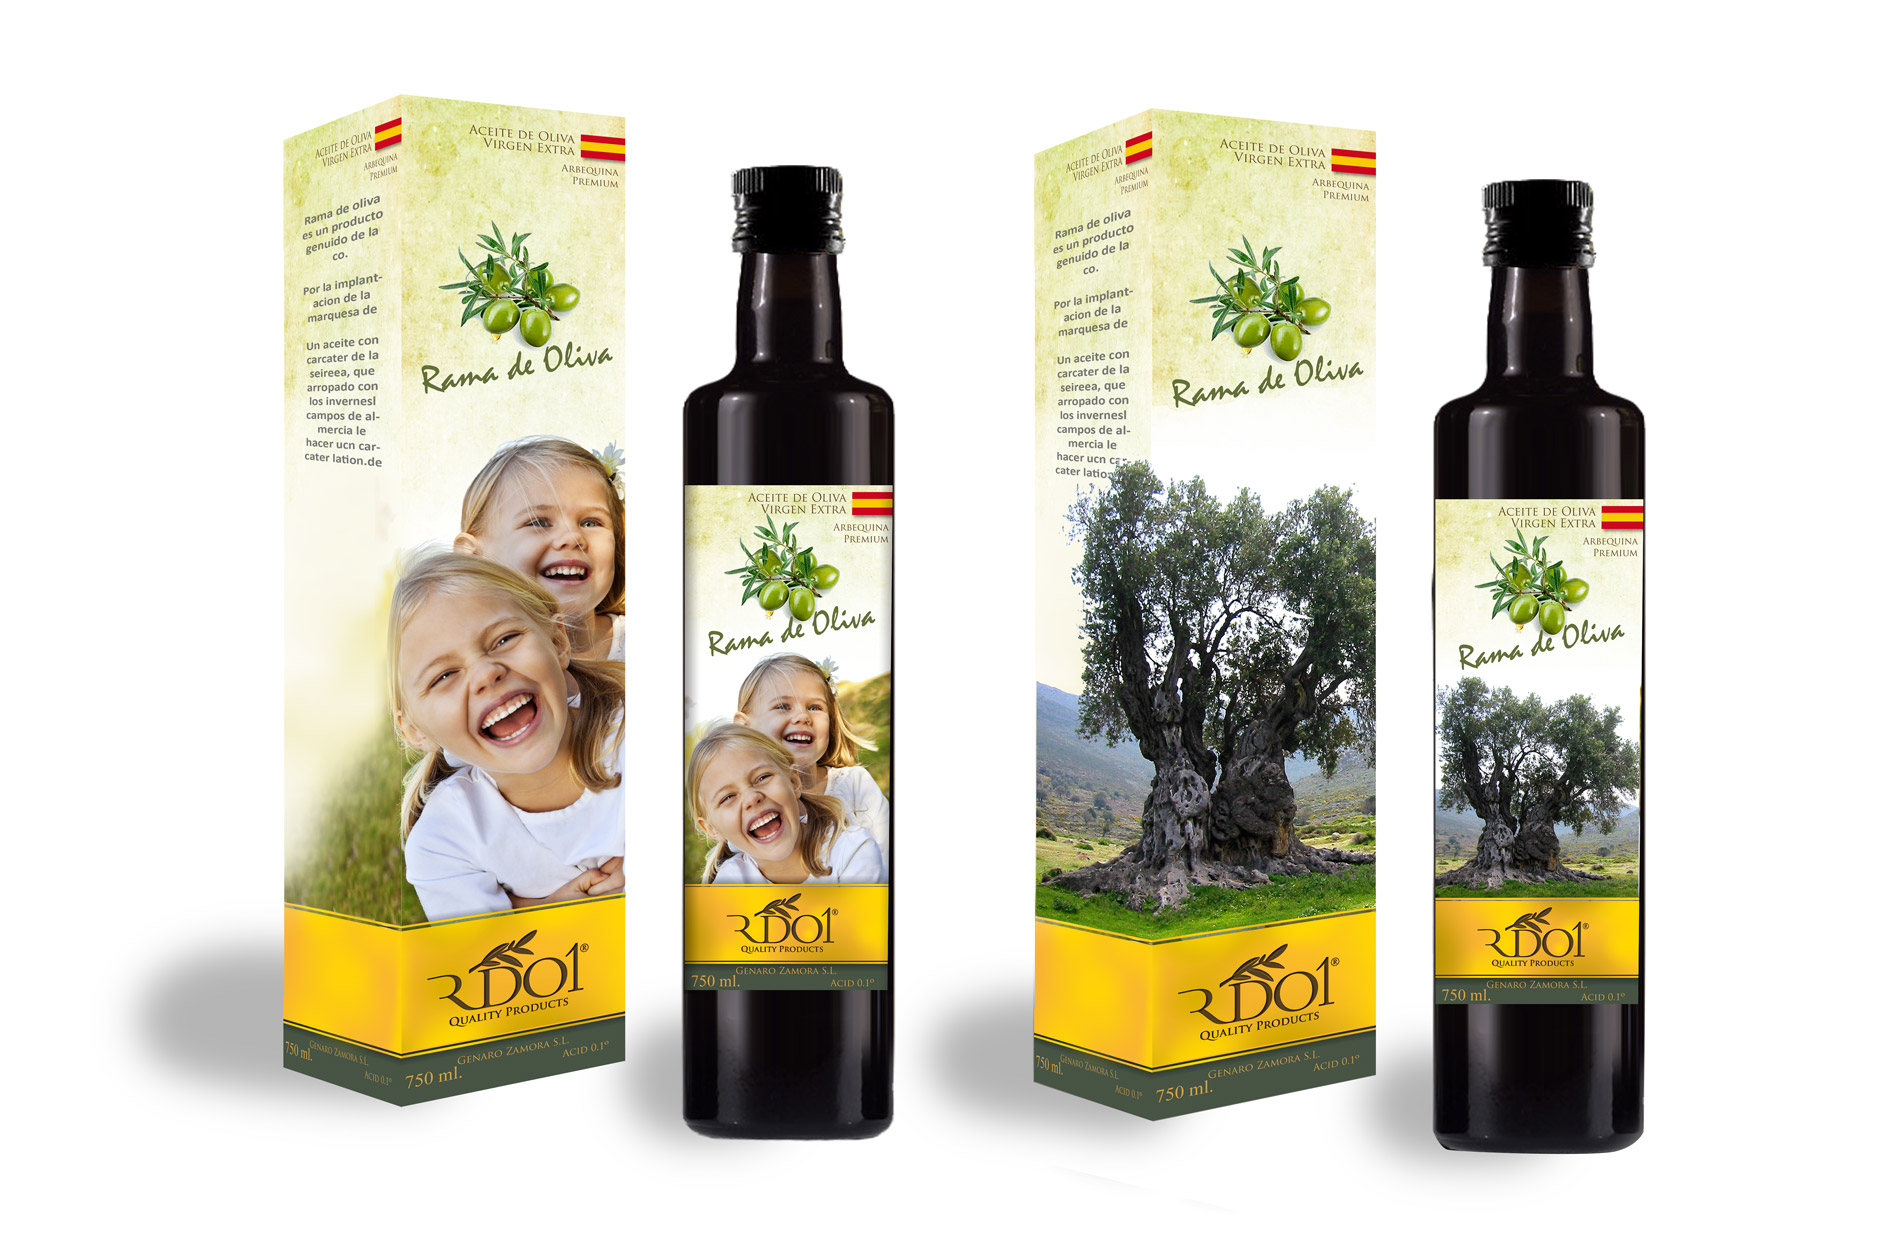 Diseño de logo y etiquetas para empresa exportadora de aceite de oliva virgen extra de alta calidad